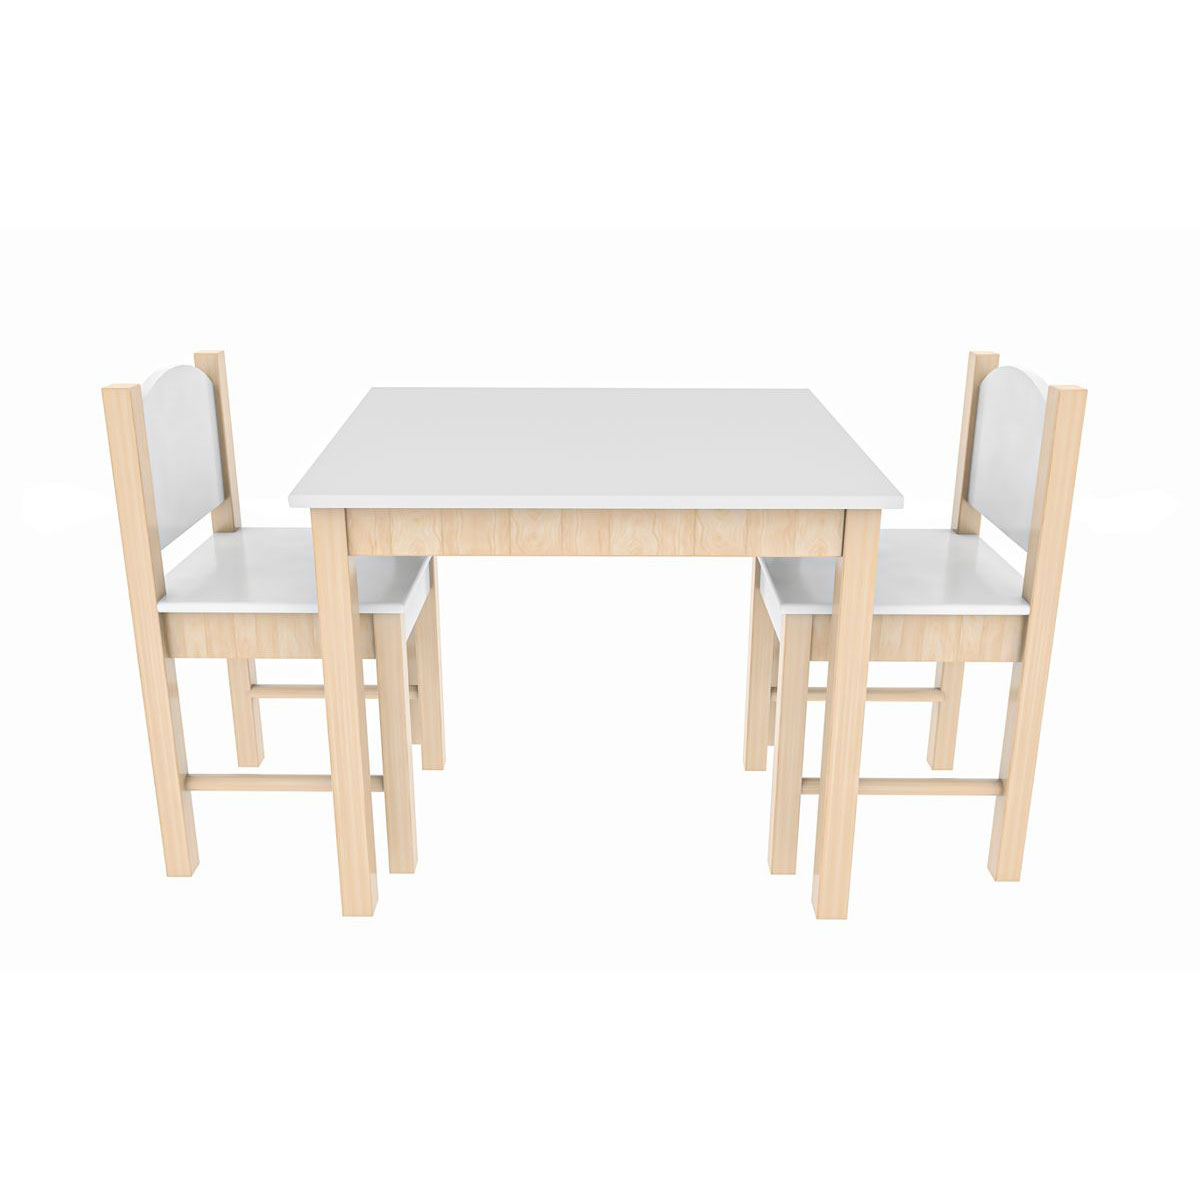 Coemo 3tlg. Kindersitzgruppe Stefano Tisch 1 | weiß K003207151 2 | Weiß Stühle